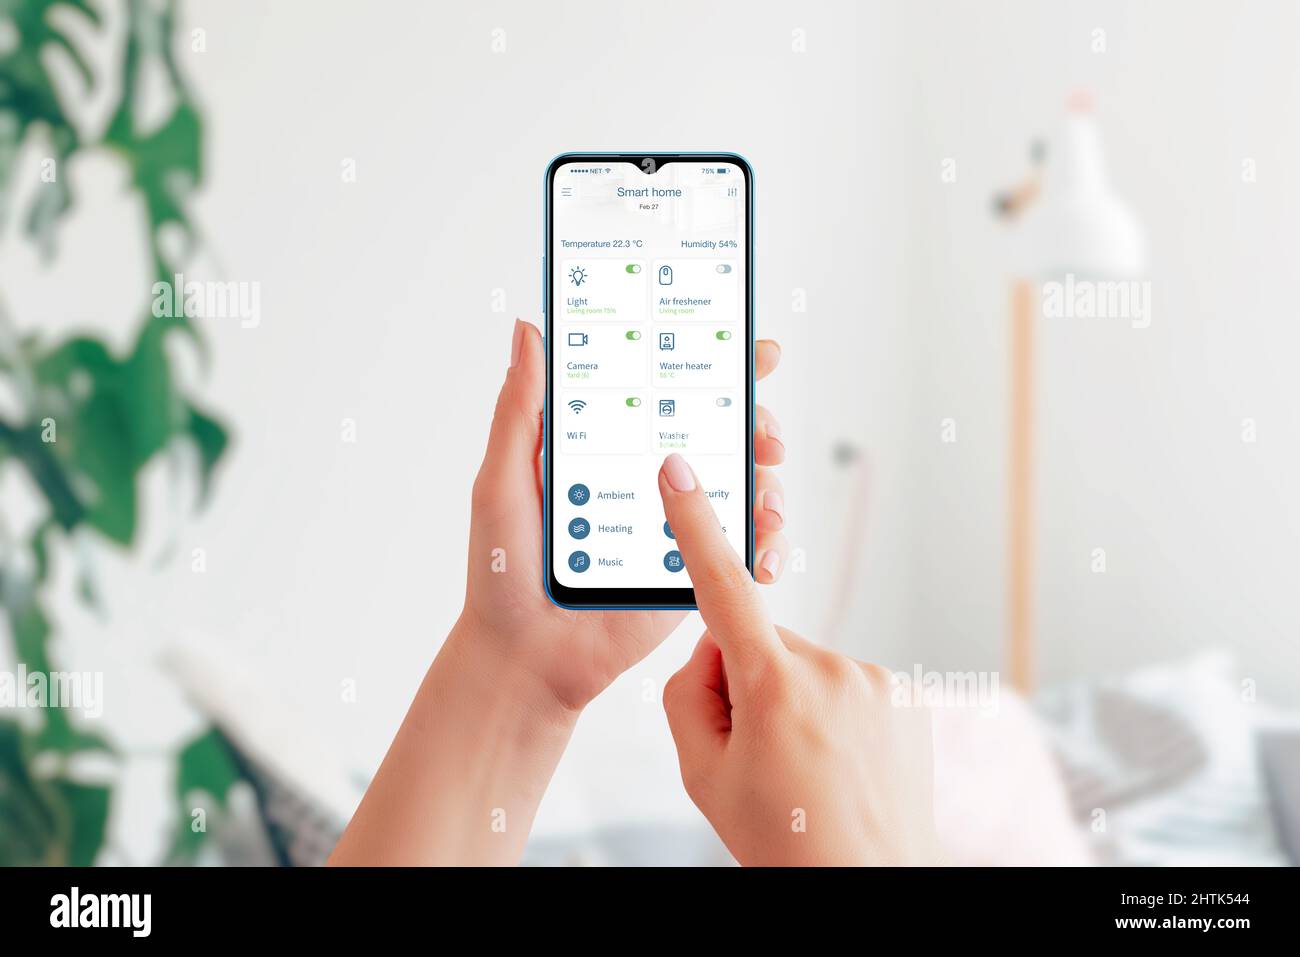 Controlla i dispositivi domestici con l'app Smart Home. Smartphone nelle mani, interno del soggiorno sullo sfondo. Interfaccia moderna per le app di automazione domestica Foto Stock